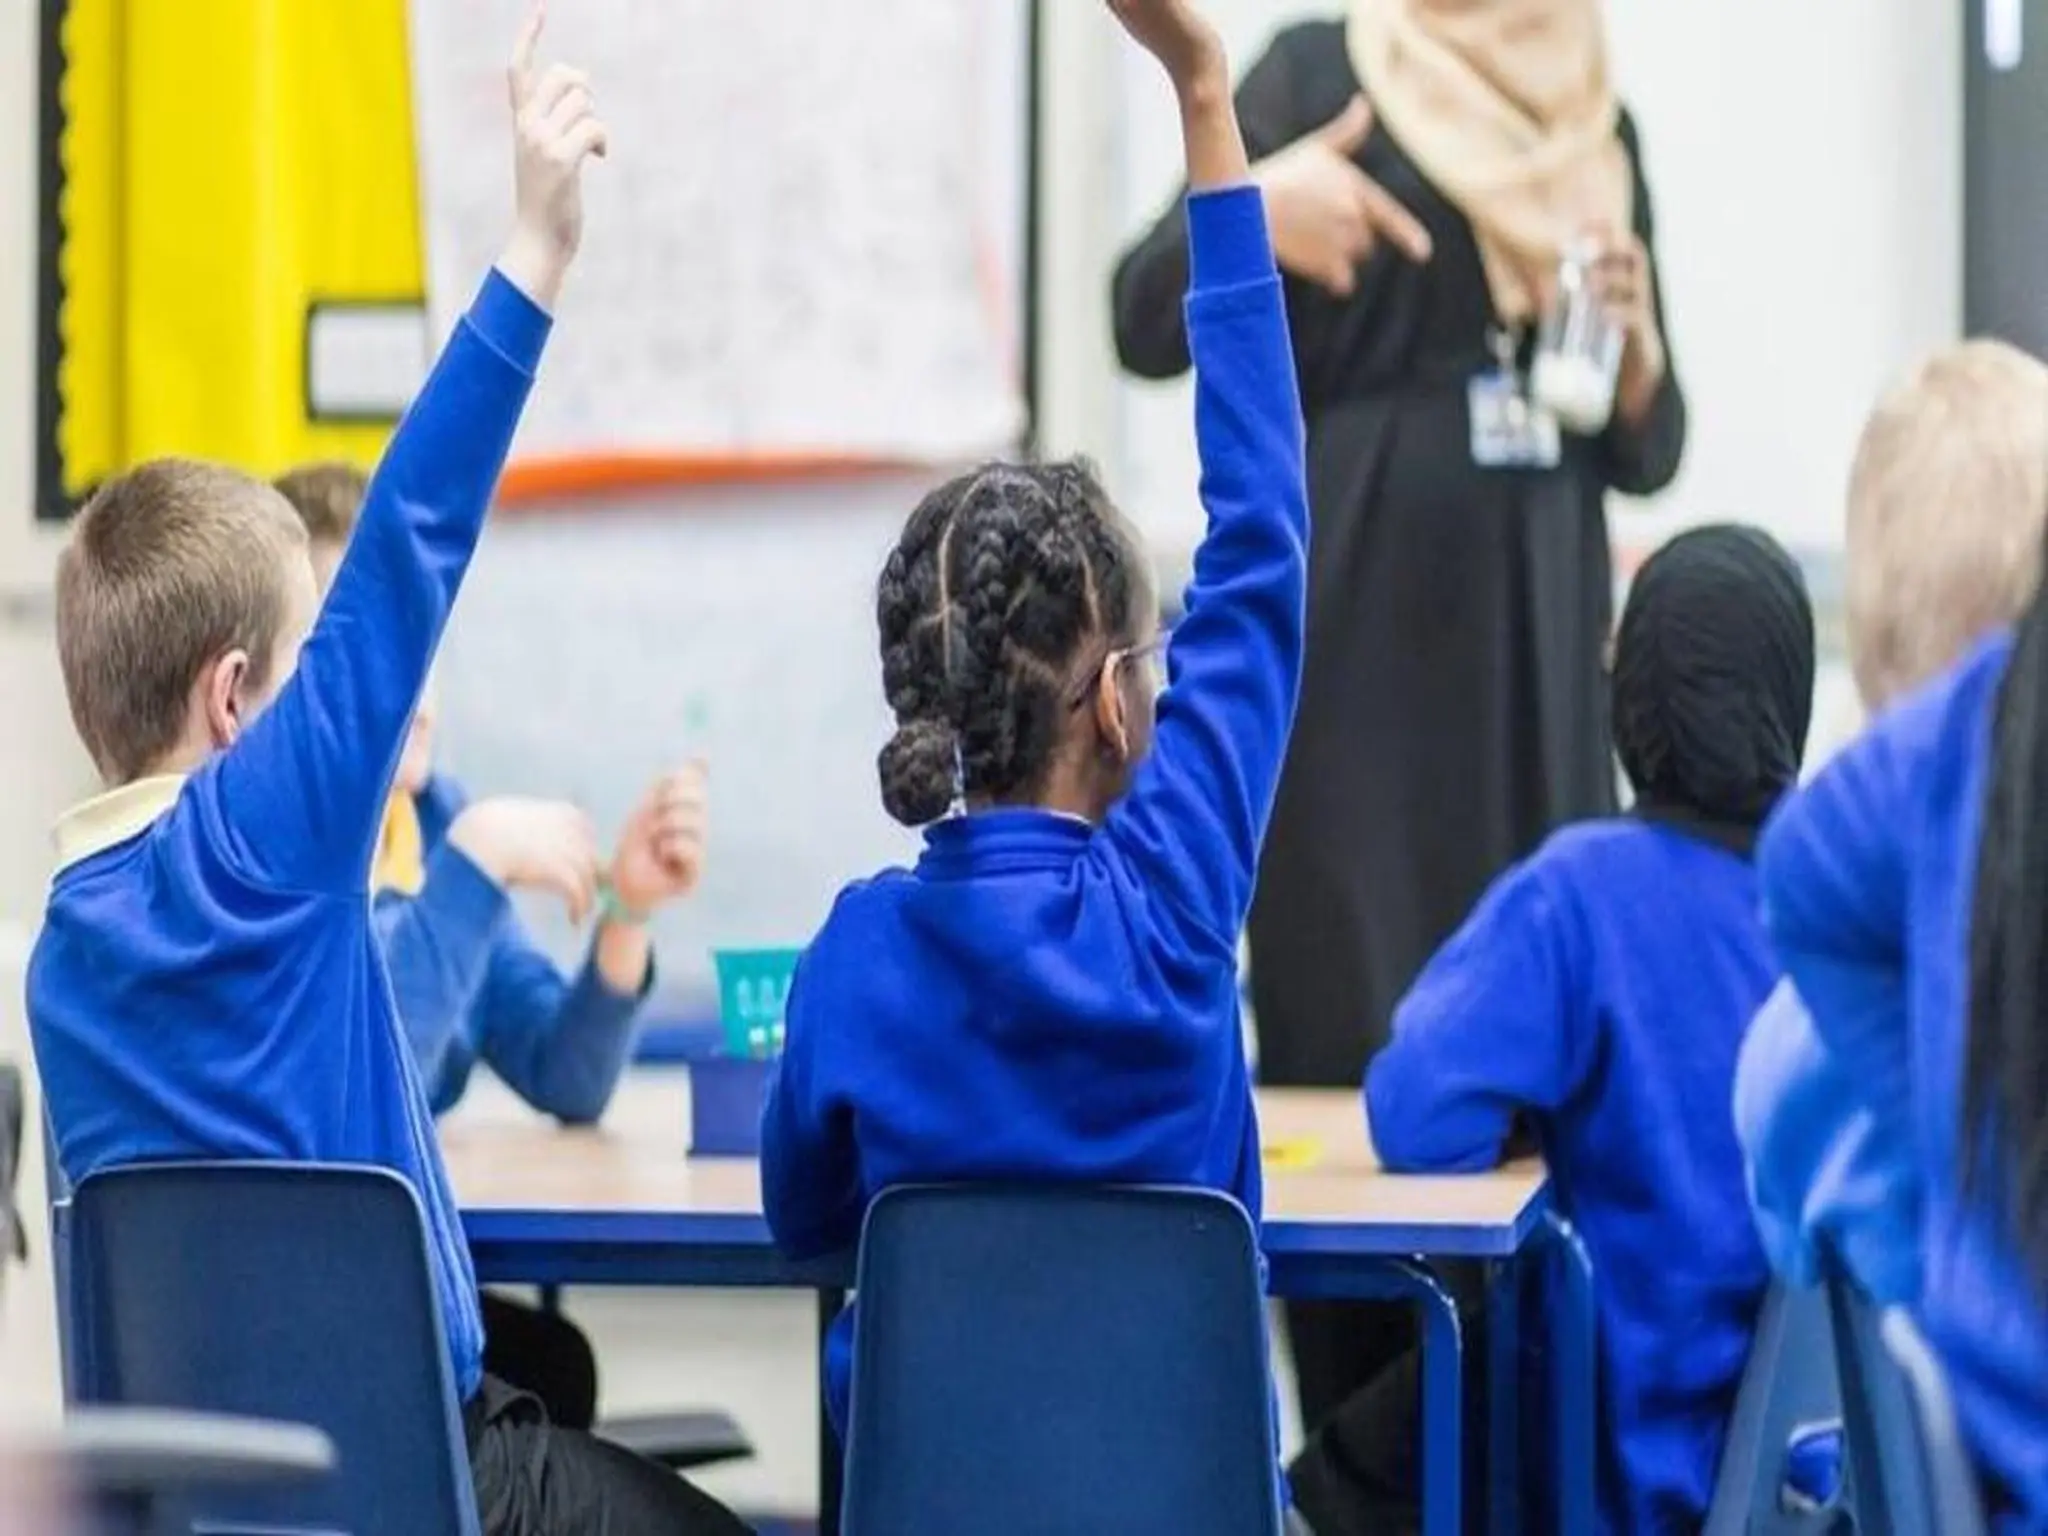 الإمارات تعتزم تقليص الدوام المدرسي خلال الأسابيع القادمة